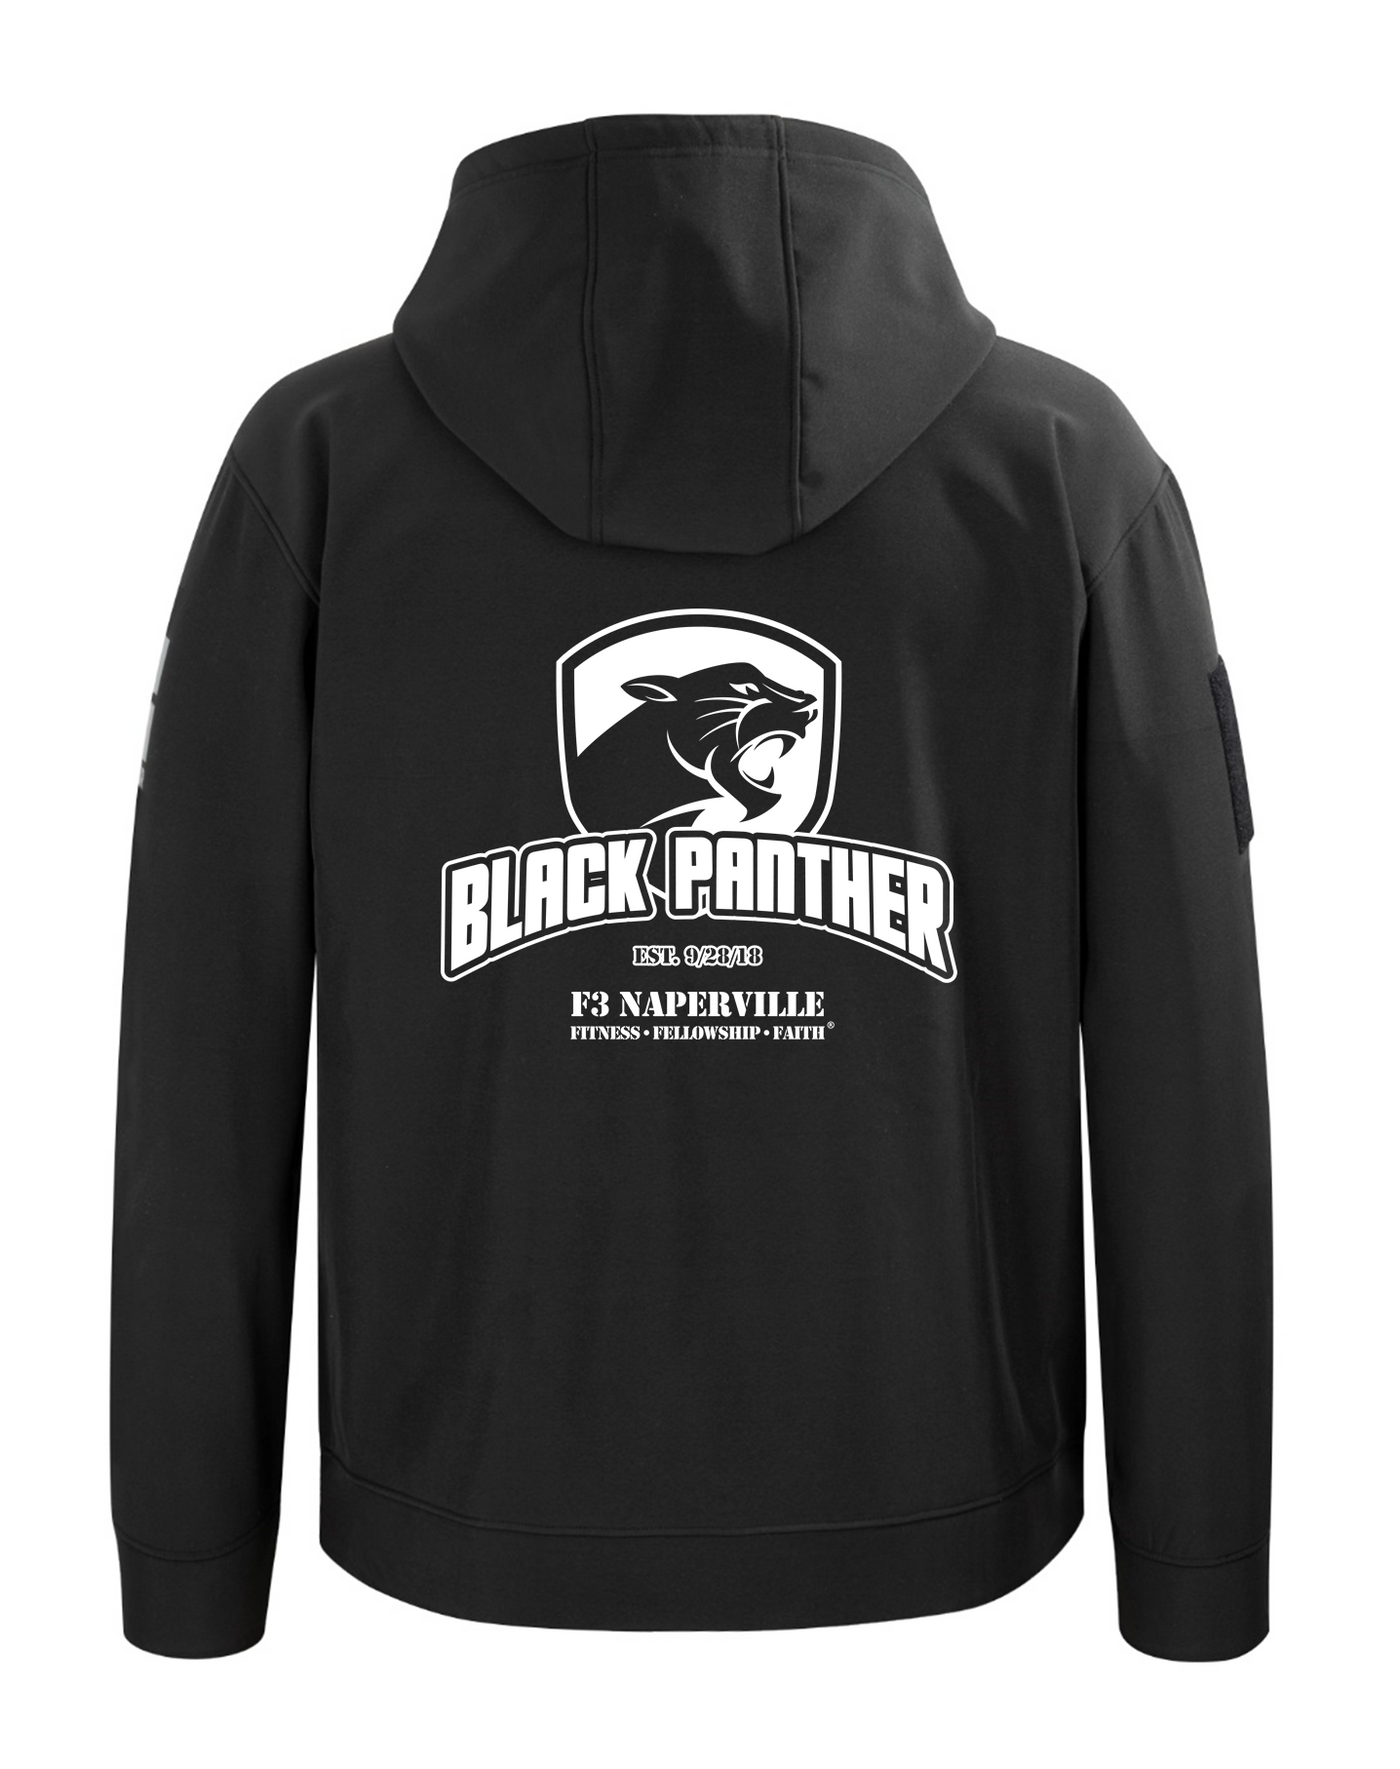 F3 Naperville Black Panther Pre-Order November 2023